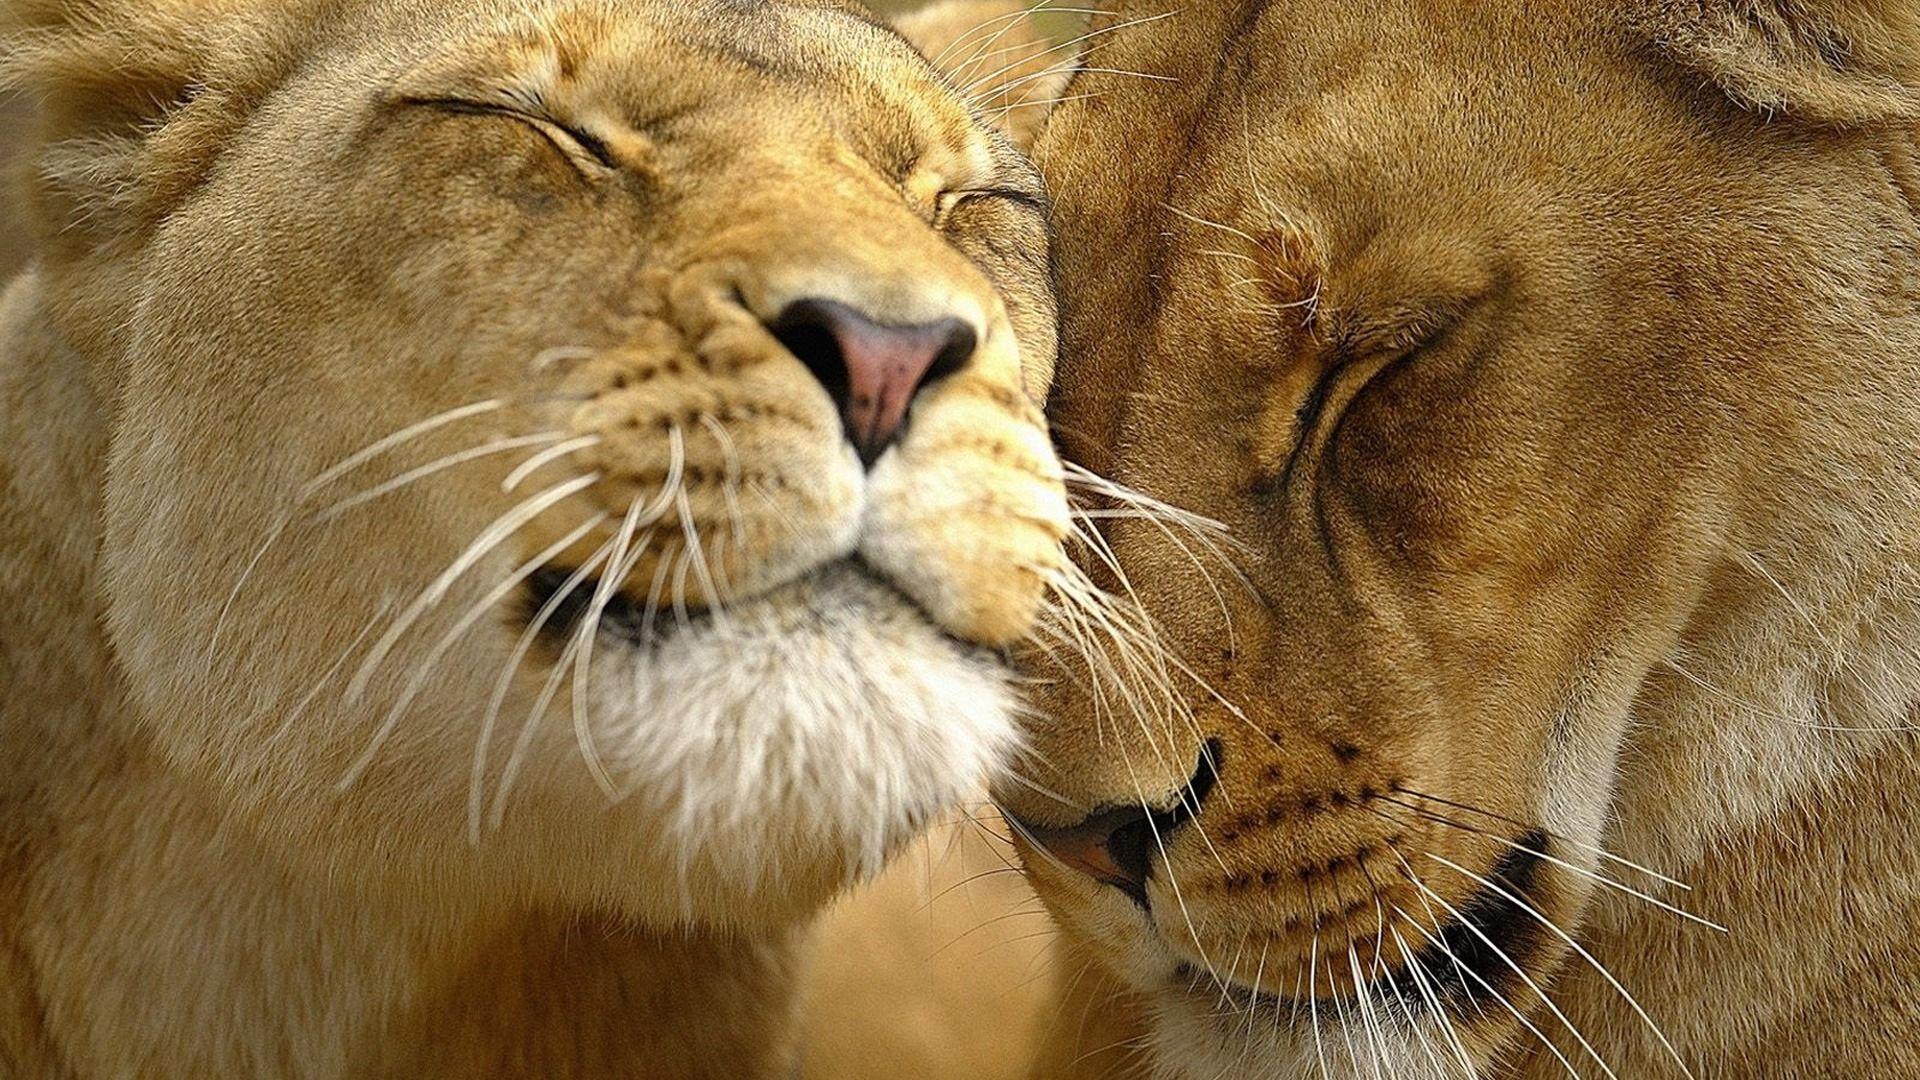 Lions in Love Wallpaper Big Cats Animals Wallpaper in jpg